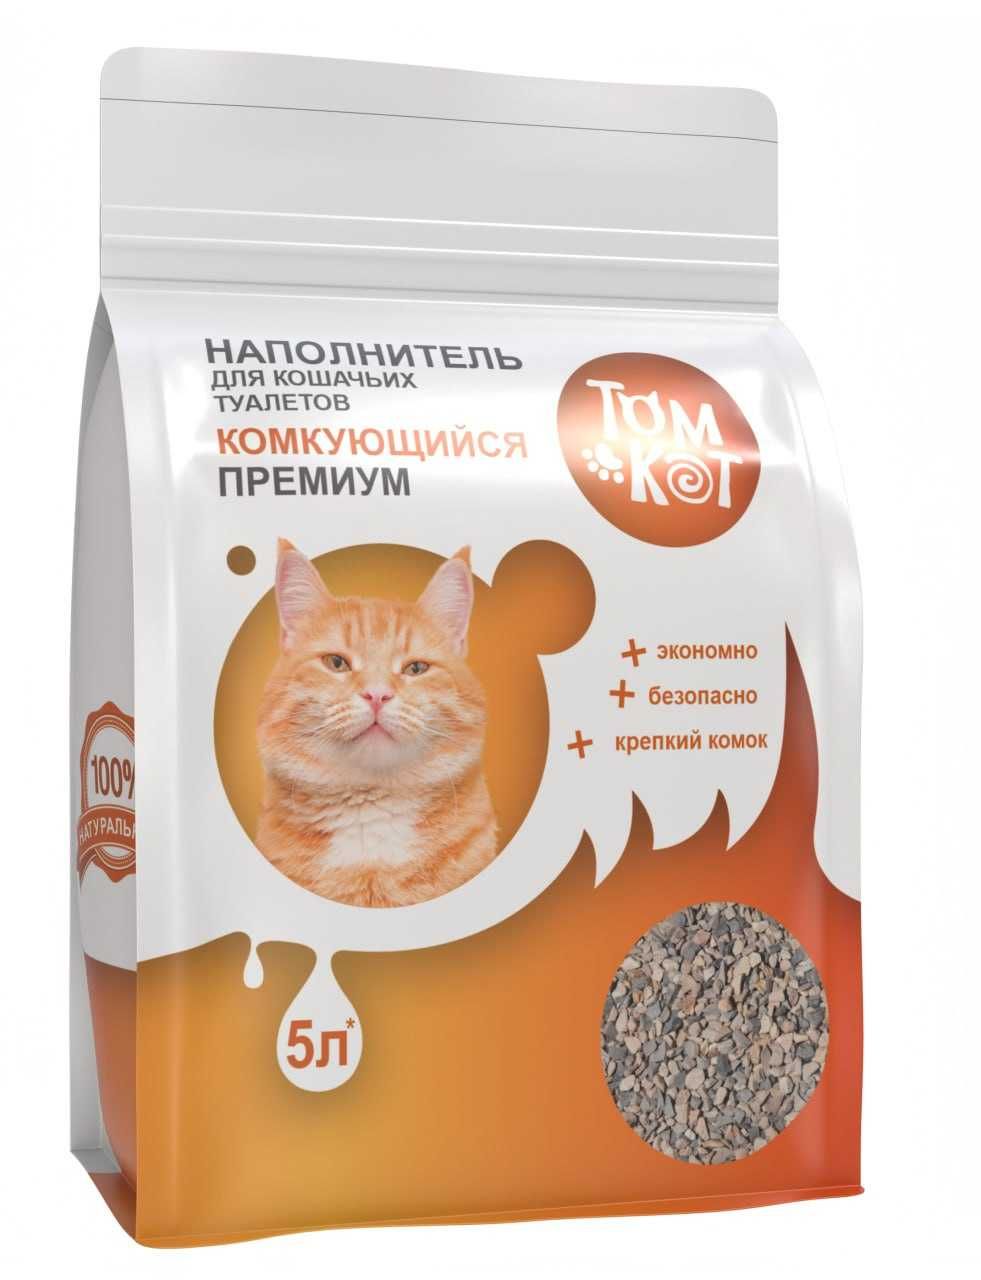 Żwirek dla kotów zbrylający się 5 litrów (3 kg) (Hurtowe dostawy)